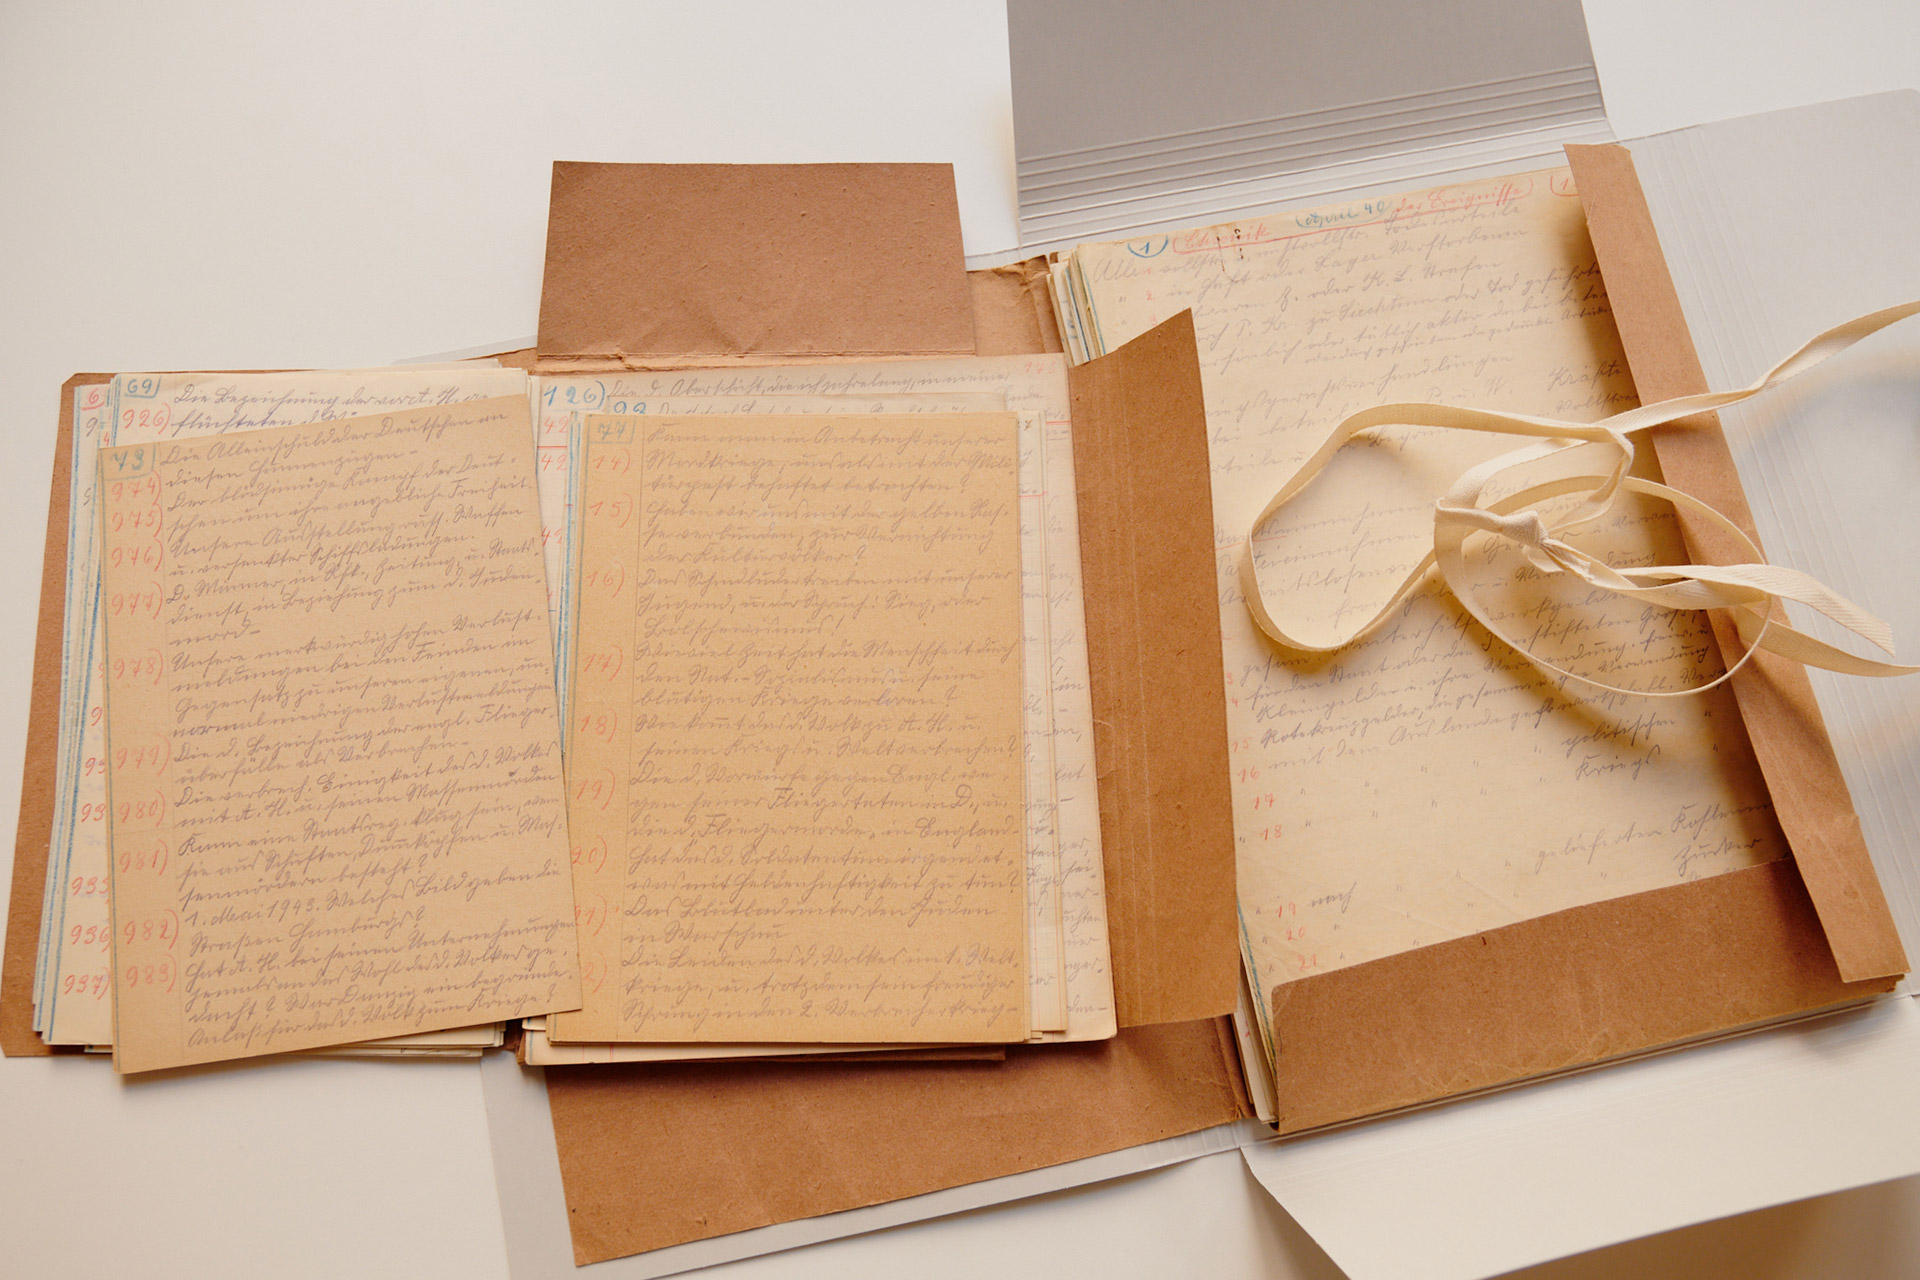 Geöffnete Mappe mit handgeschriebnen Dokumenten auf gelblichem Papier